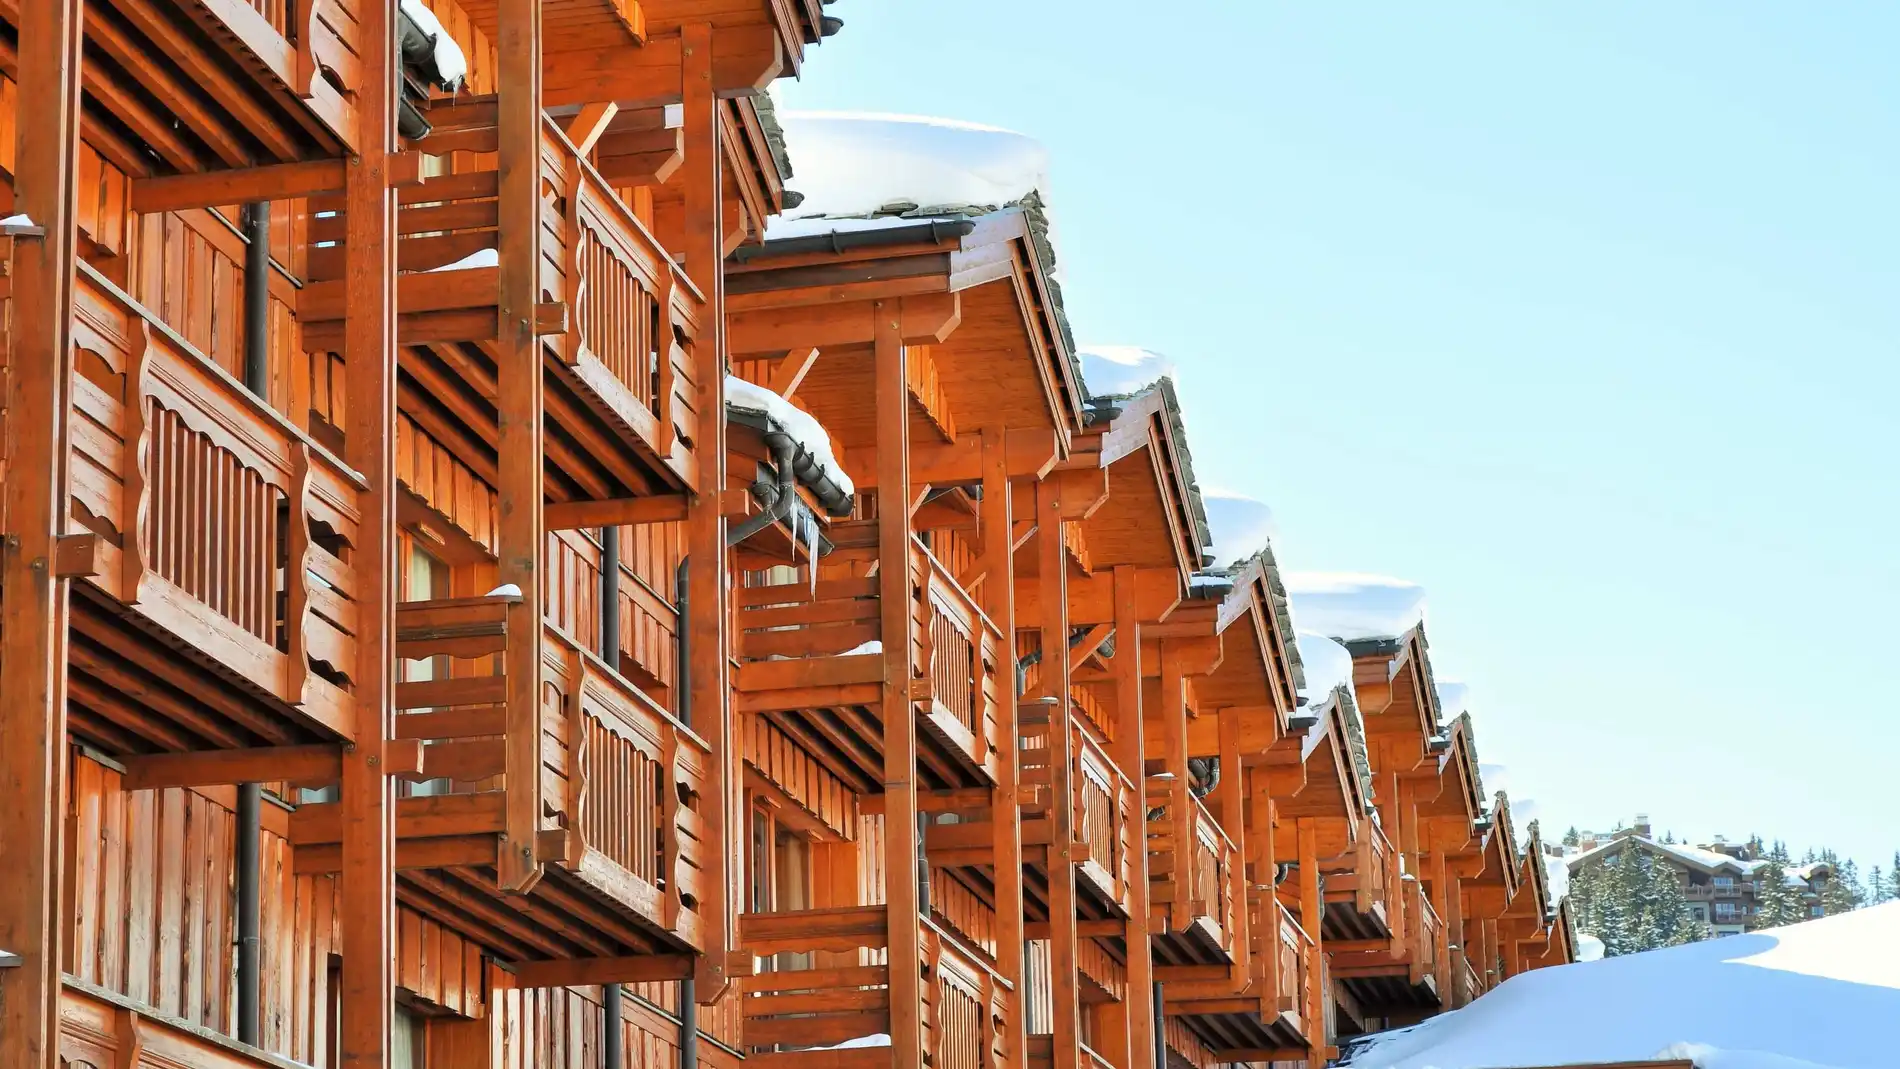 Una fila de casas de madera en un paisaje nevado